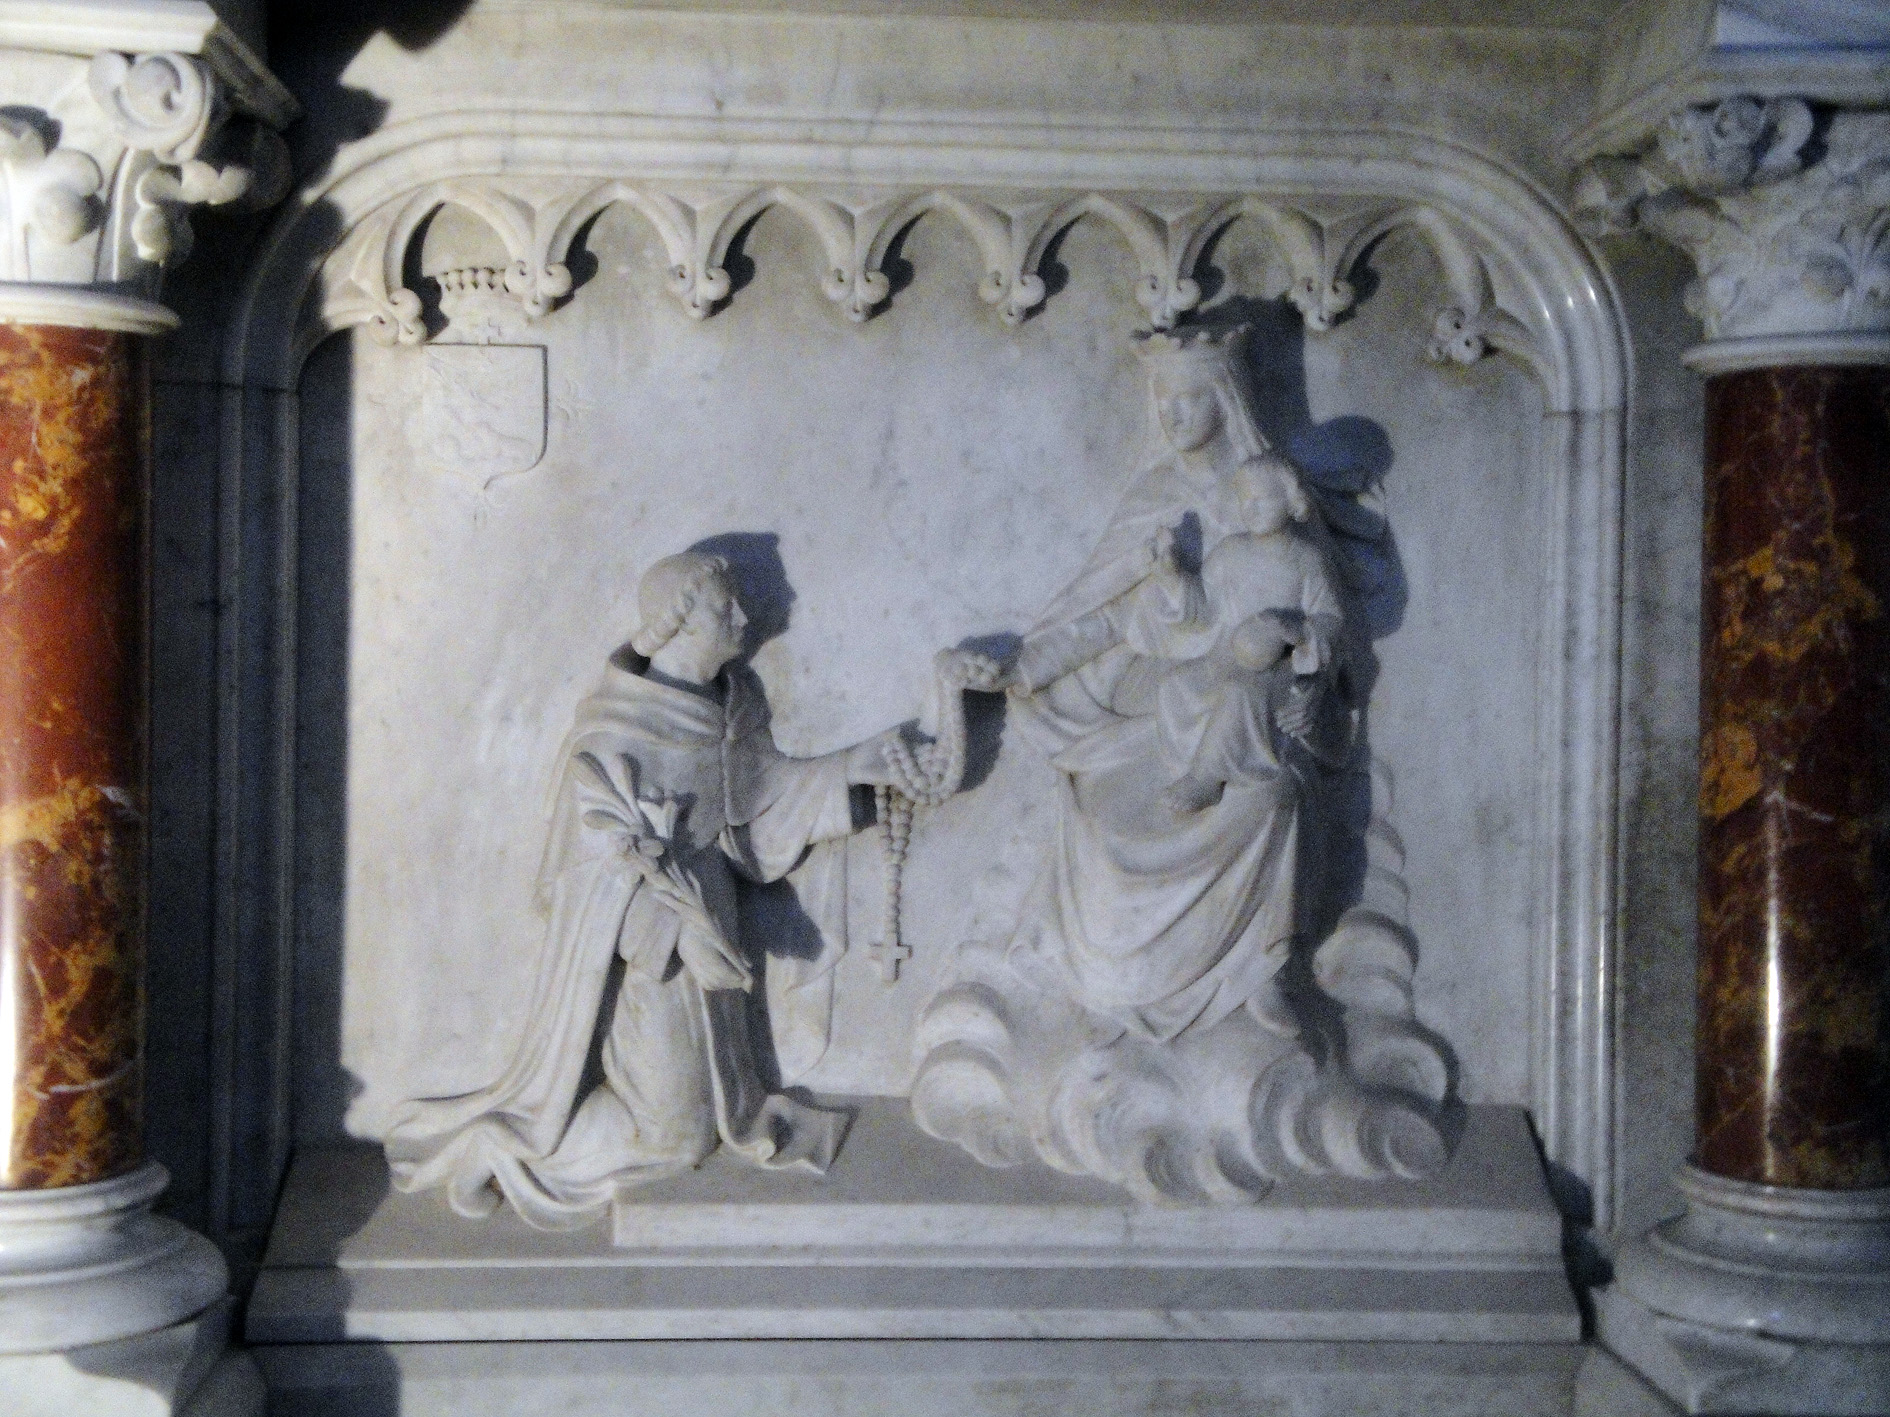 07.07.2013 Detalls escultòrics a l'altar de l'església. La Verge, Sant Domènec i el rosari miraculós.  Muret. -  Jordi Bibià